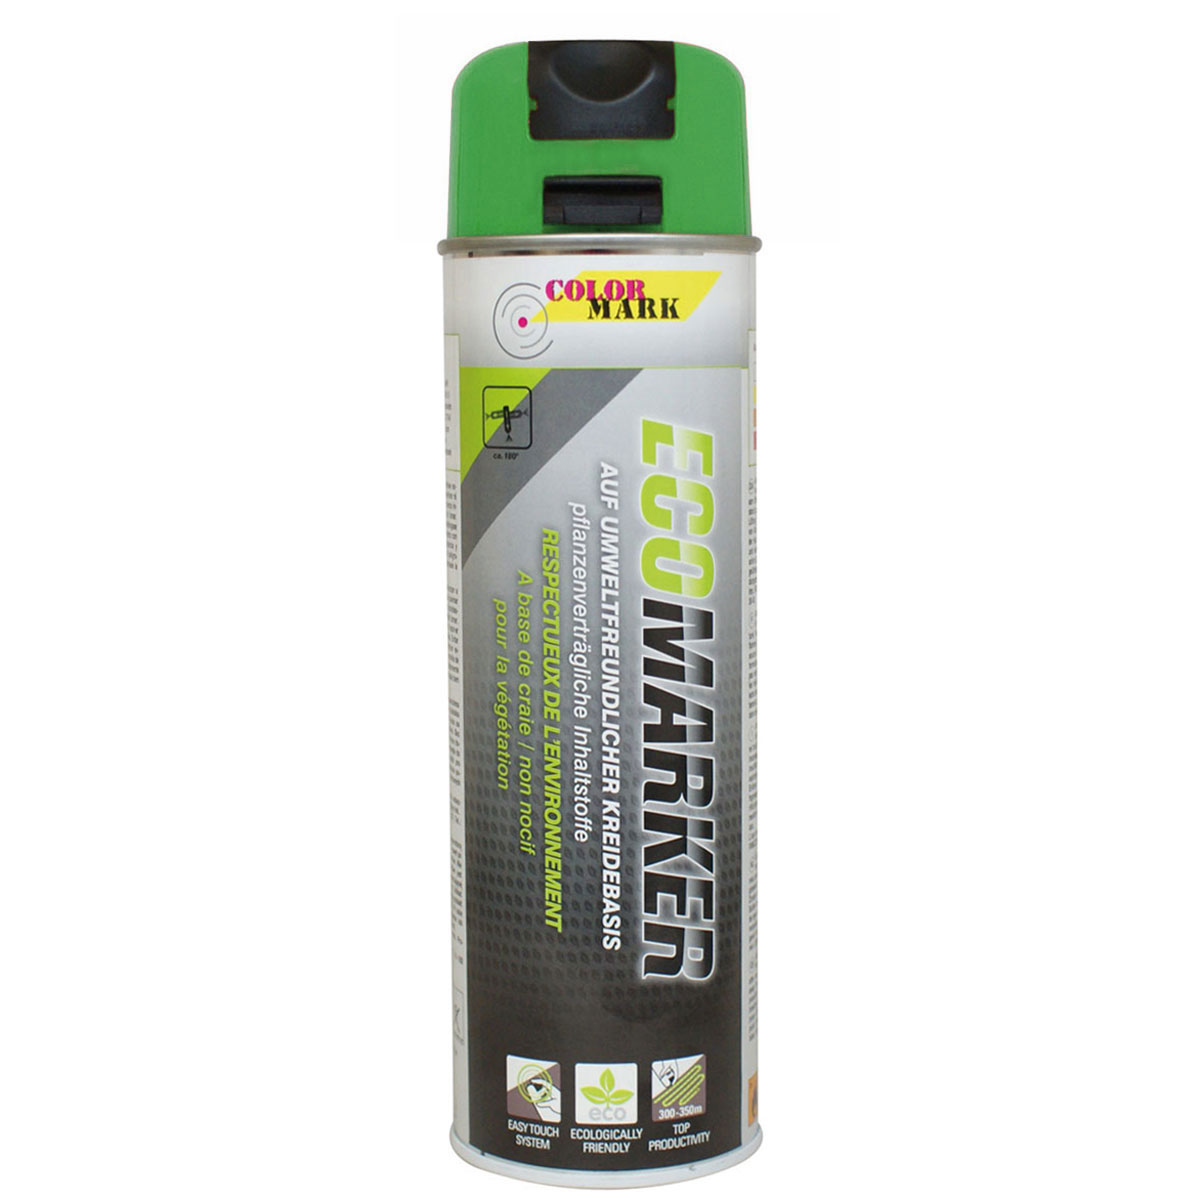 Markierfarbe "Ecomarker", grün Inhalt 500 ml - Kreidespray